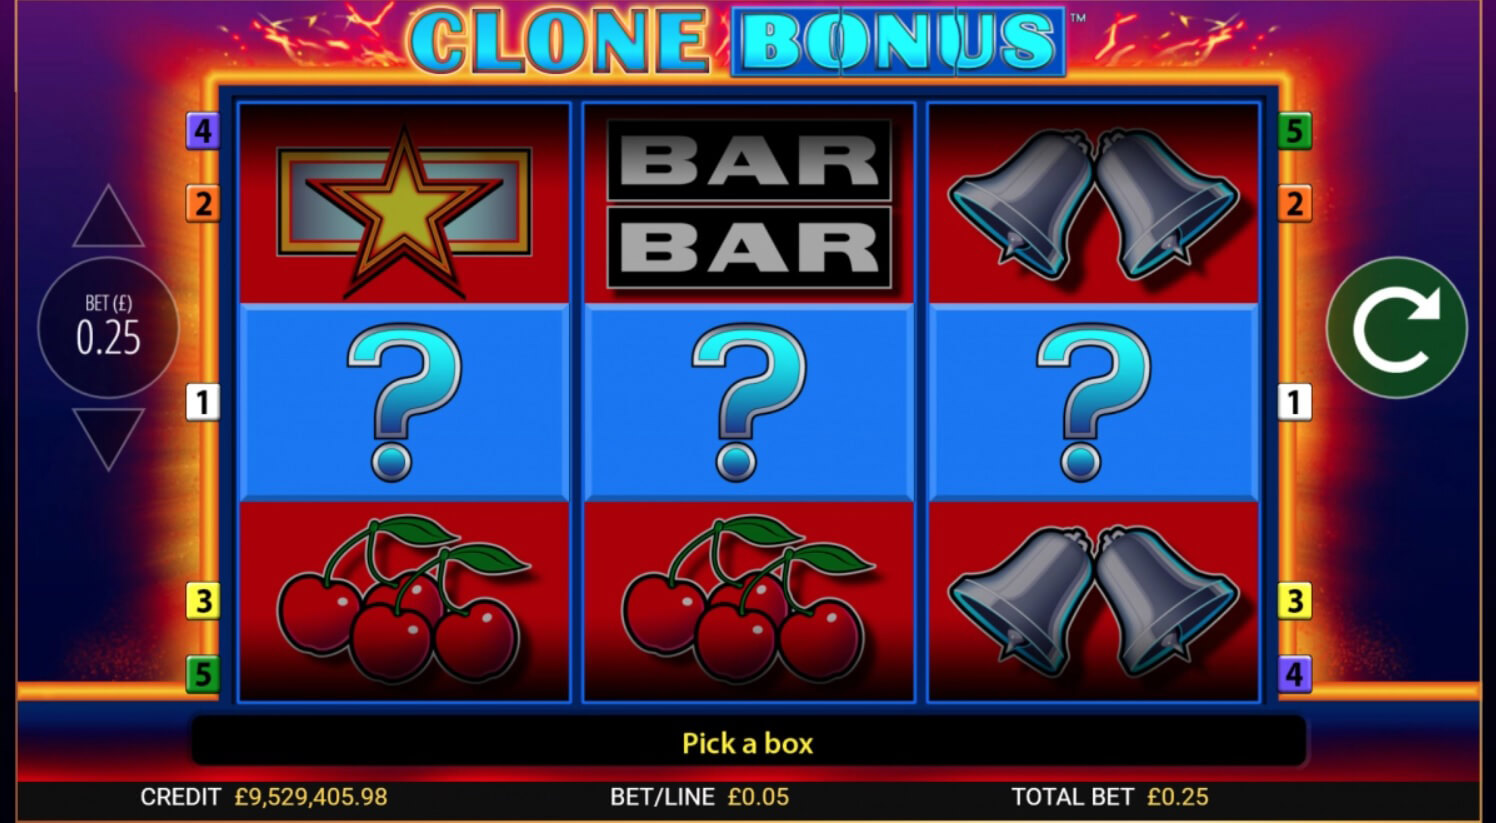 Online Casino Clone Bonus